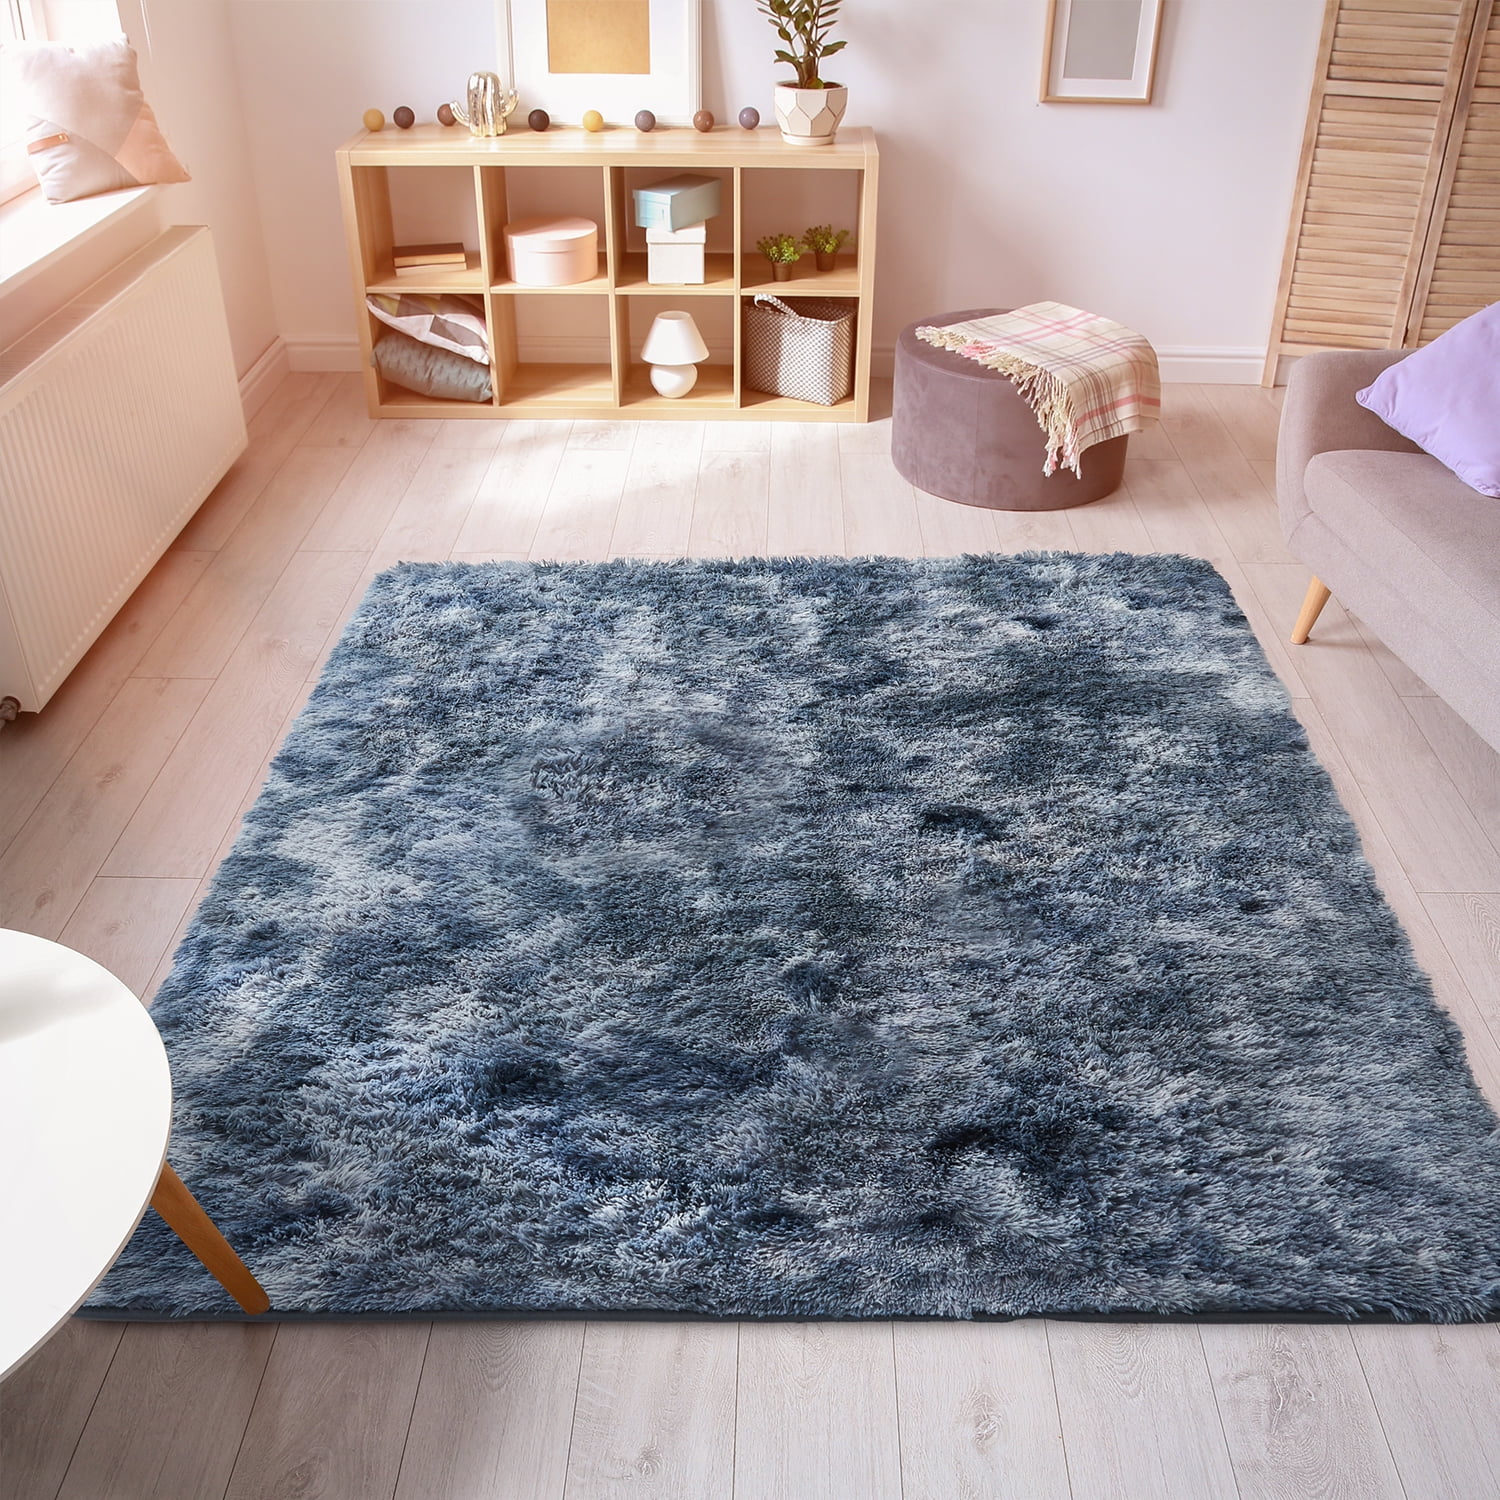 Soft fluffy Rug carpet artificial fur furry rectangular carpet bedroom decoratio 